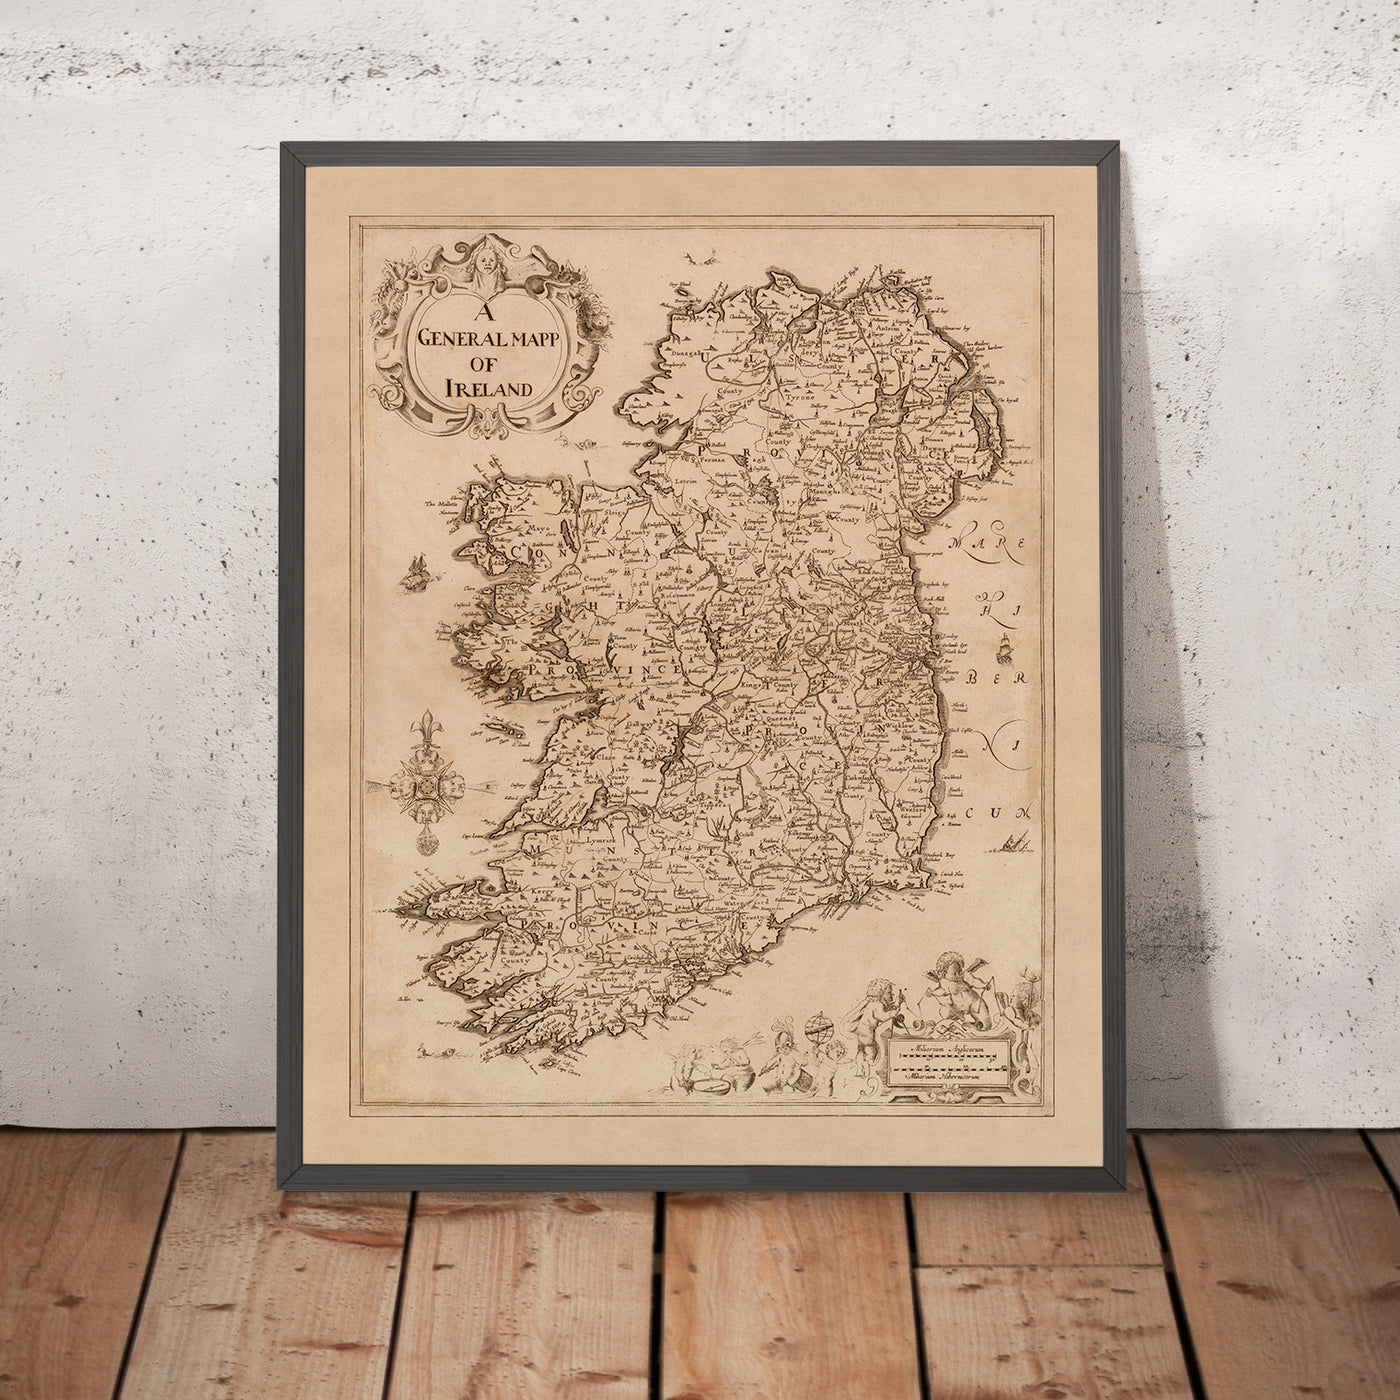 Alte Karte von Irland von Petty, 1685: Dublin, Cork, Limerick, Galway, Waterford